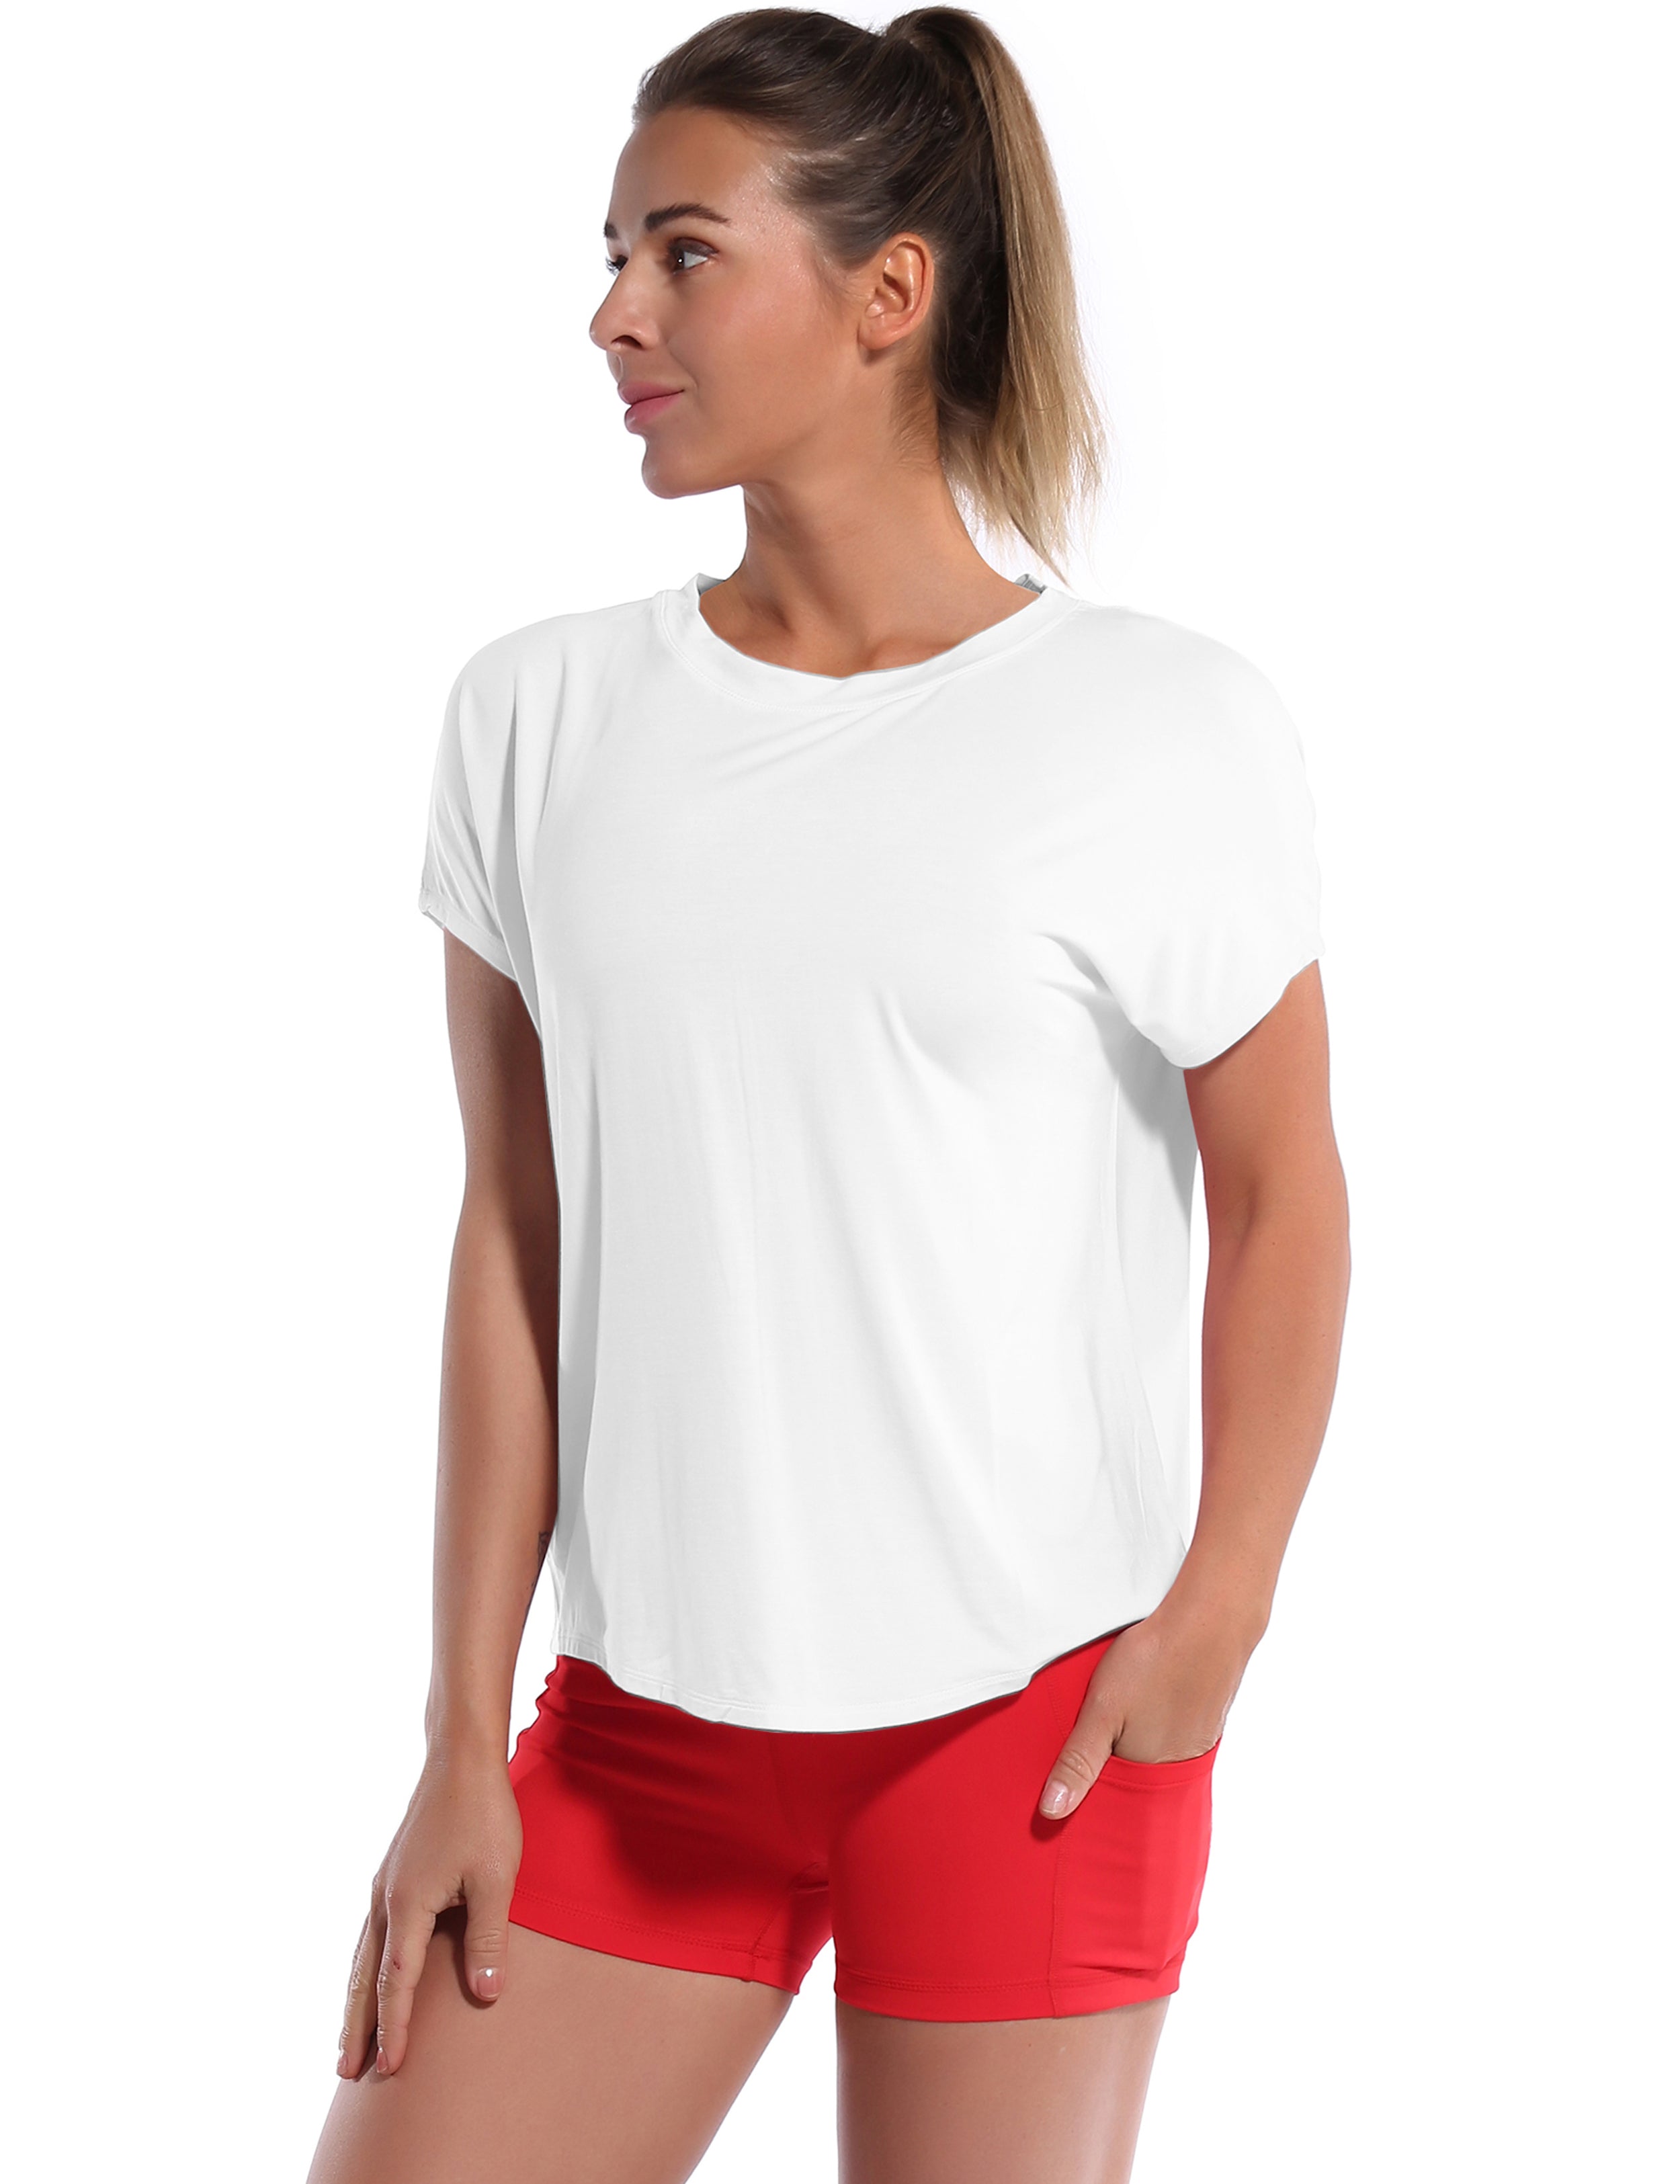 Hip Length Short Sleeve Shirt white_yoga